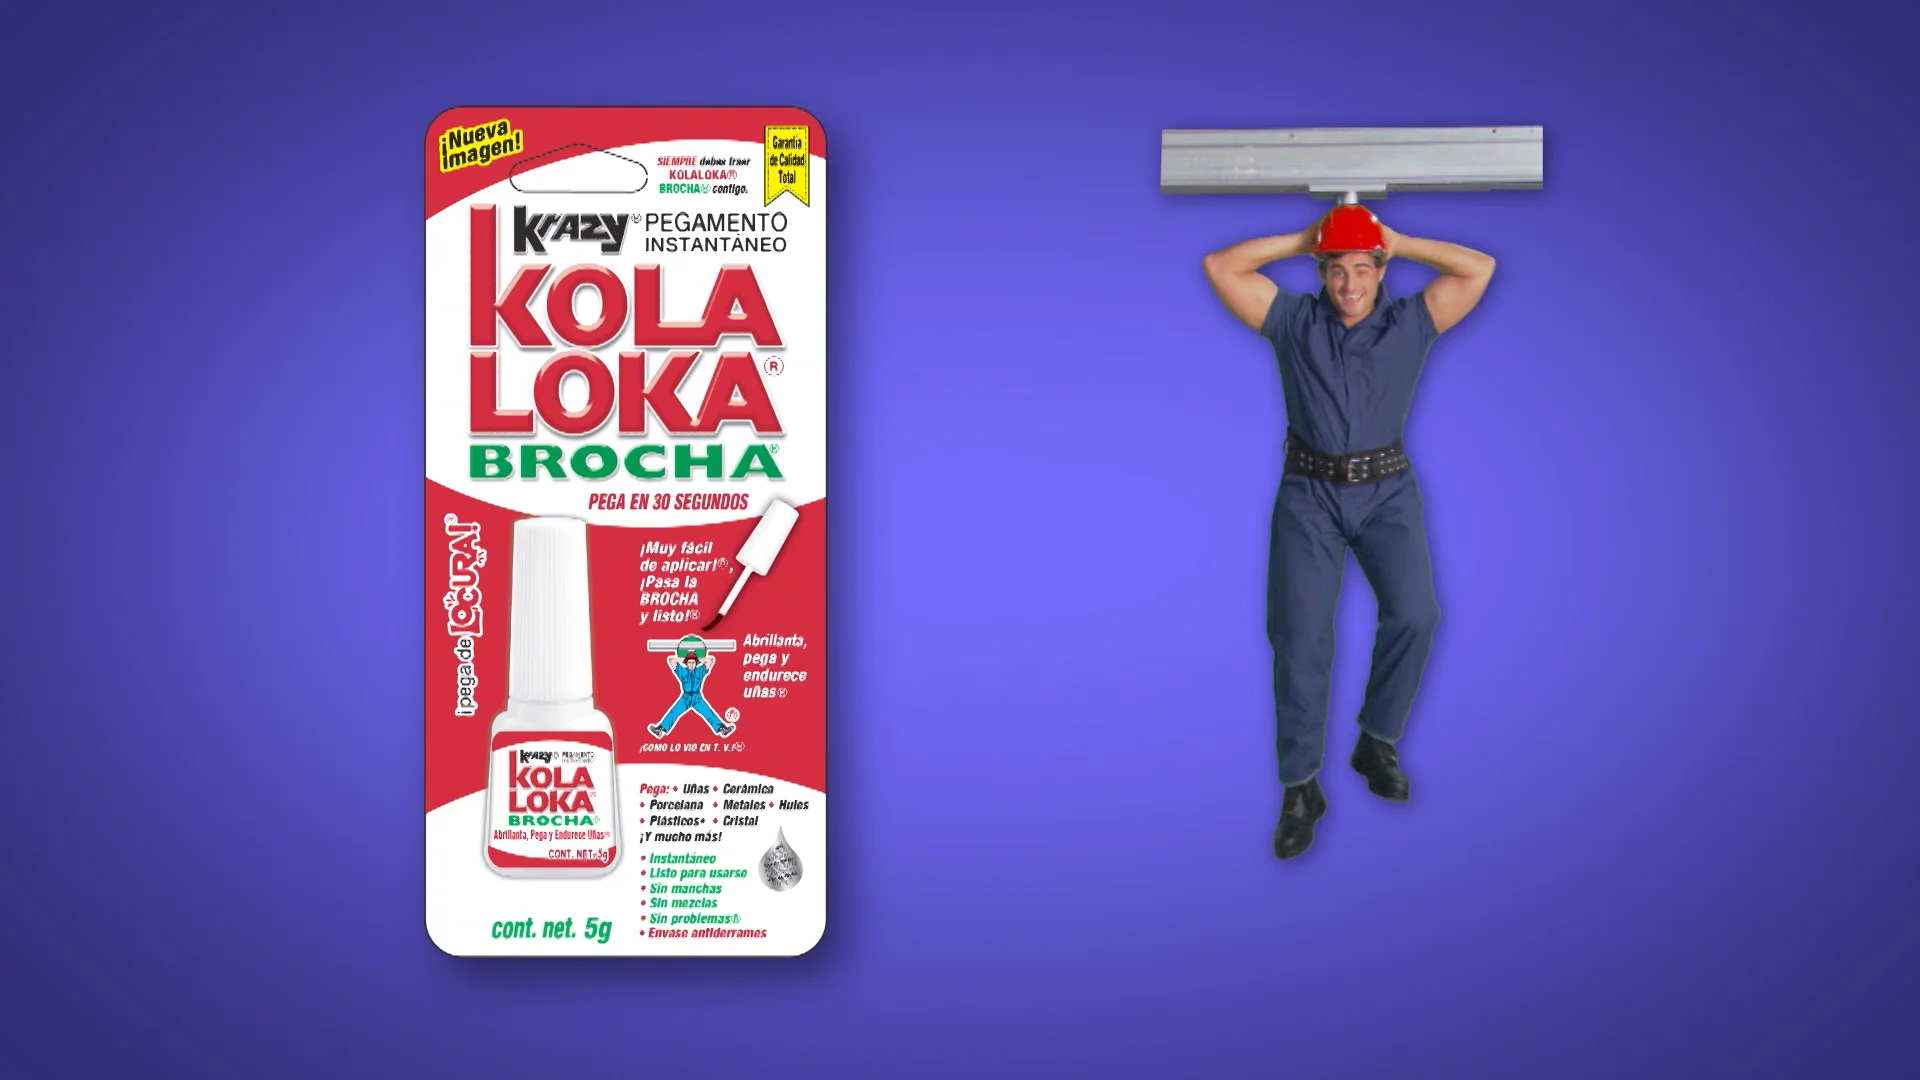 Kola Loka Brocha Distintos Usos (cuadro) on Vimeo